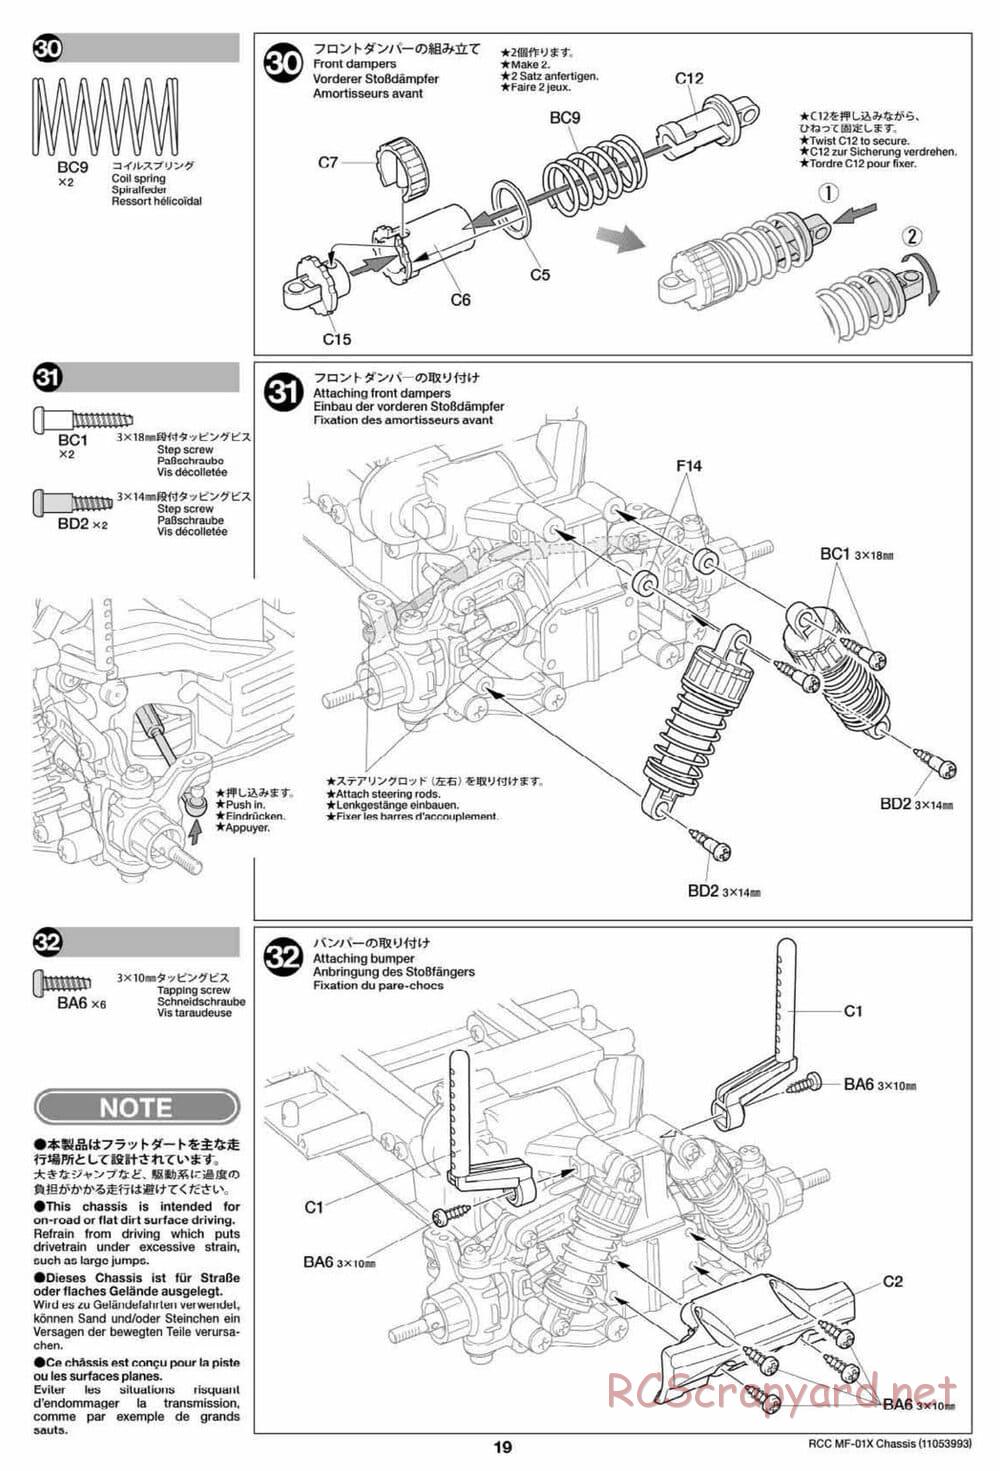 Tamiya - MF-01X Chassis - Manual - Page 19